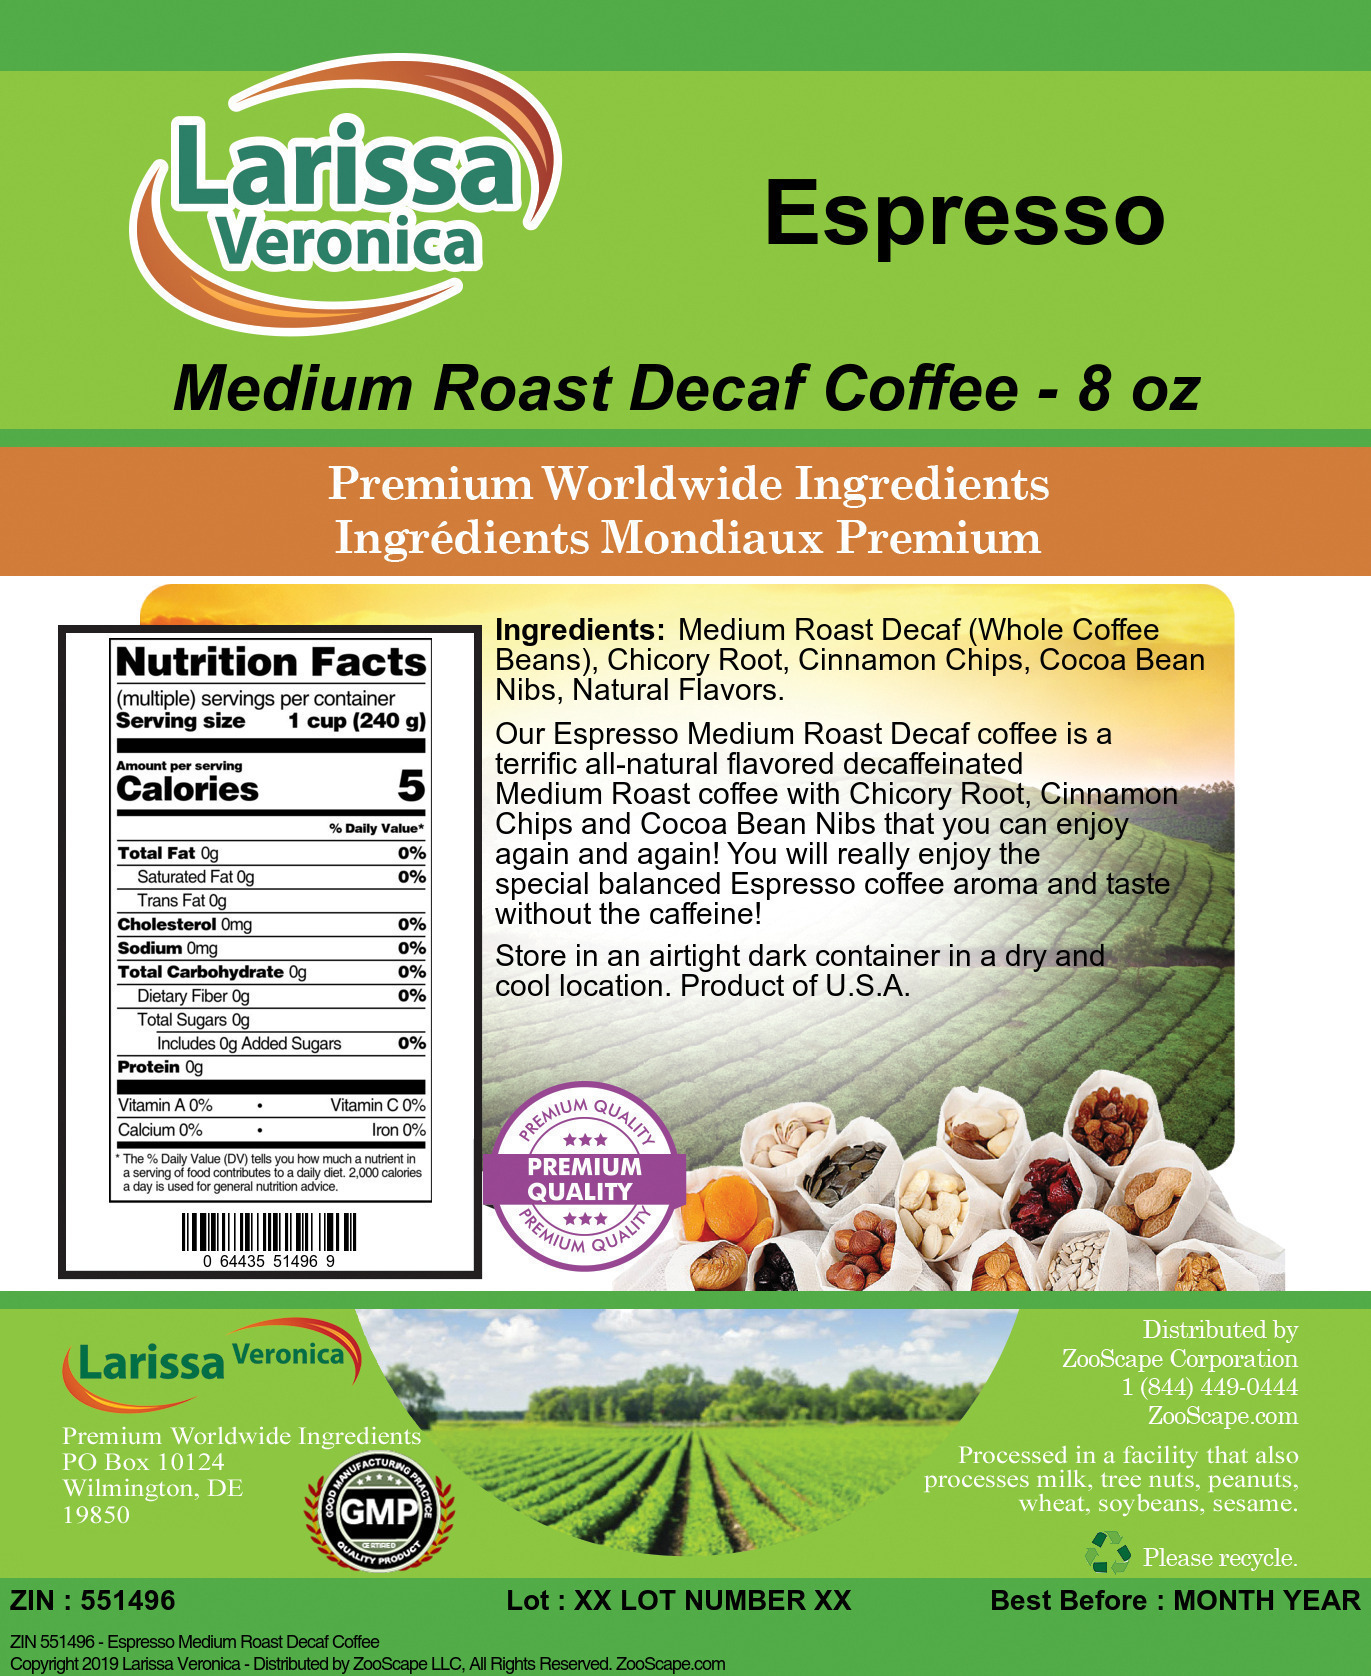 Espresso Medium Roast Decaf Coffee - Label